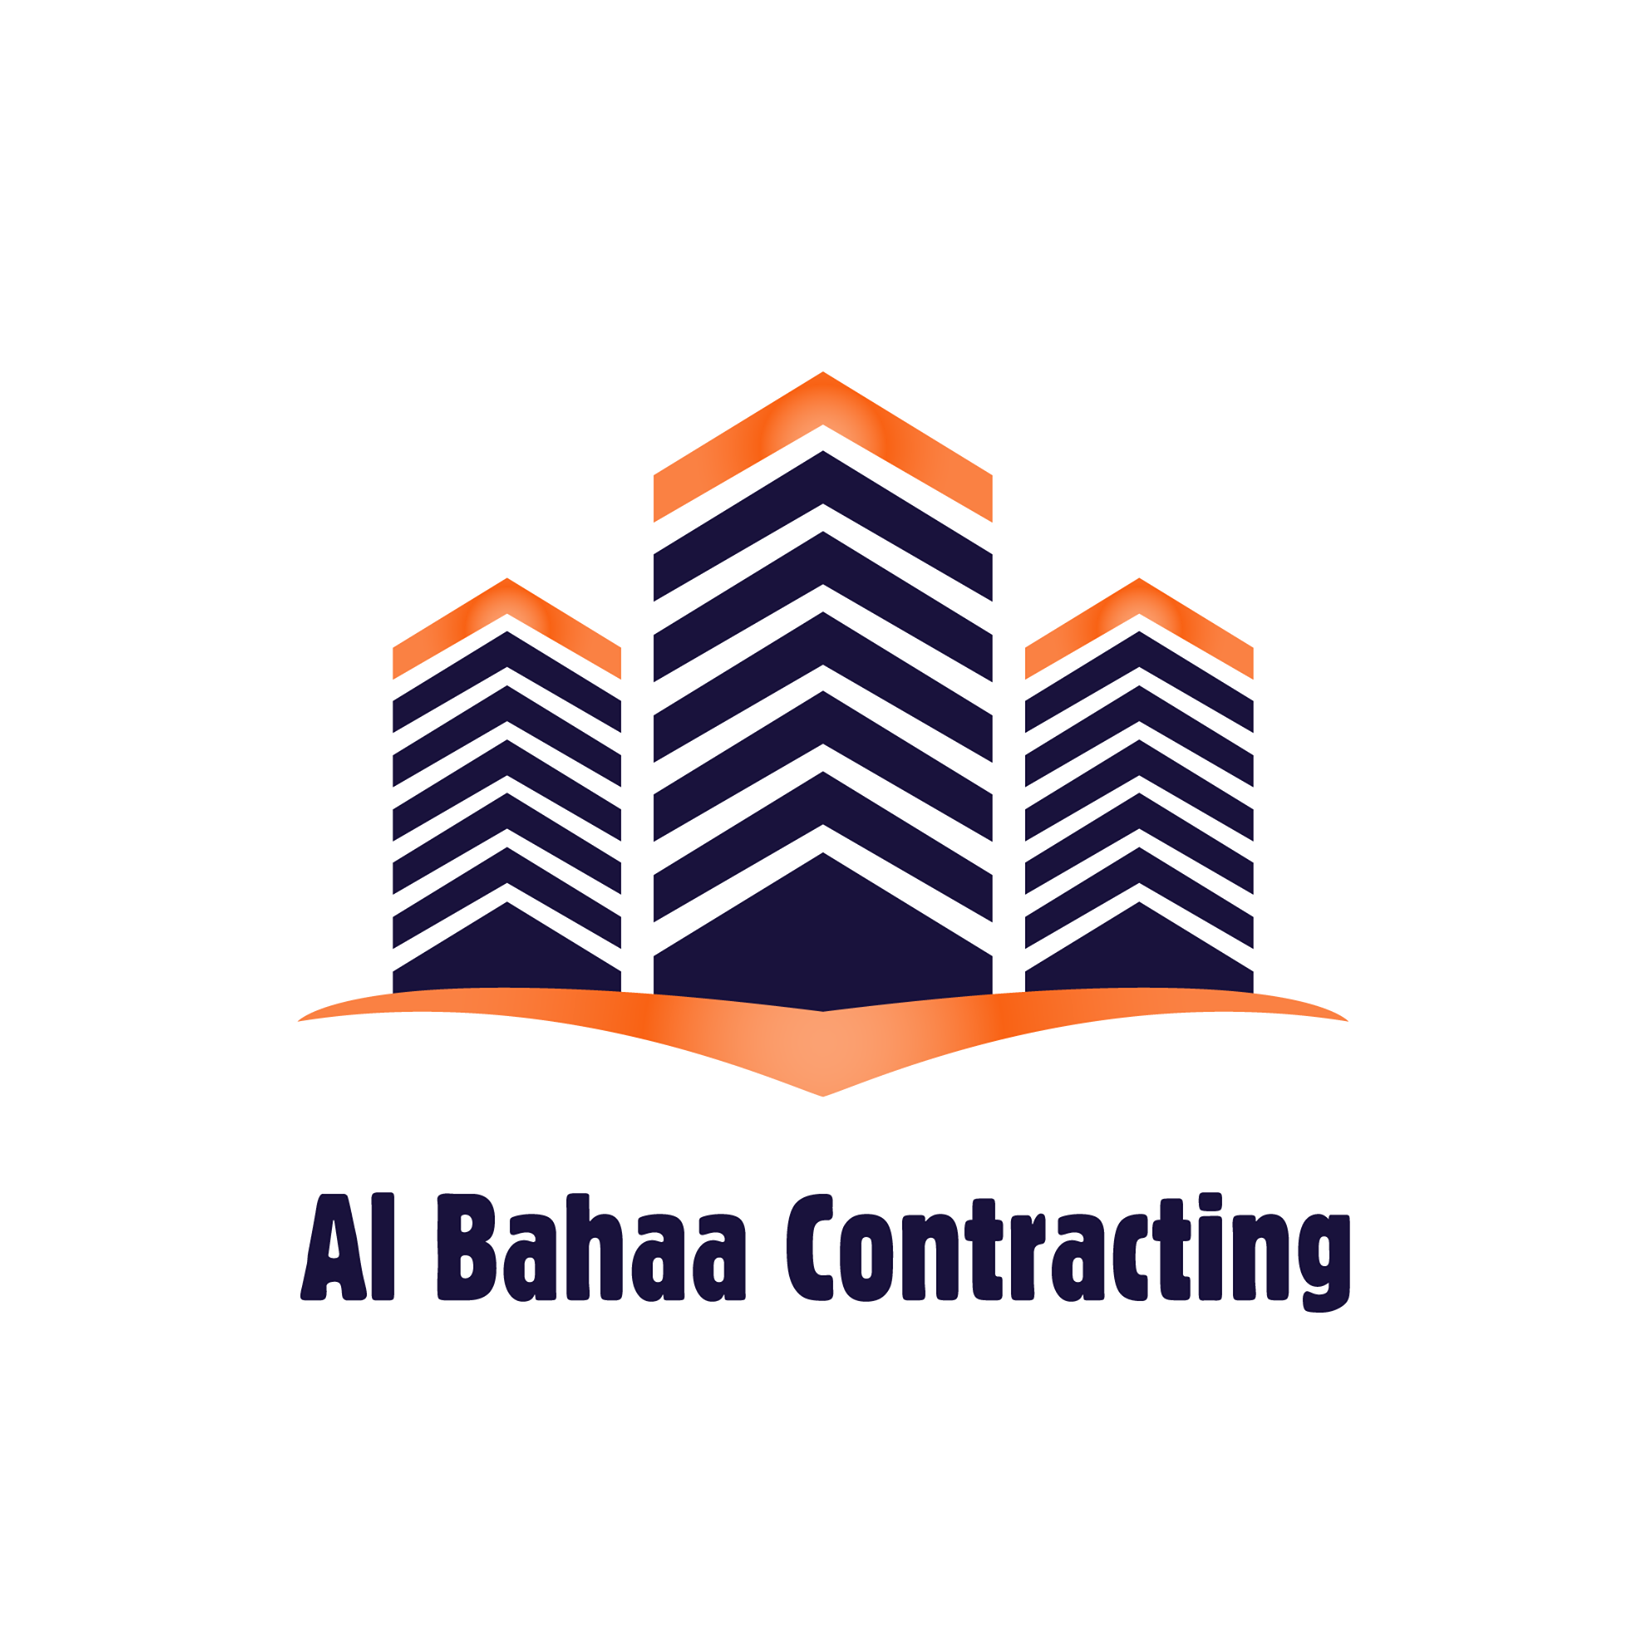 Albahaa contracting